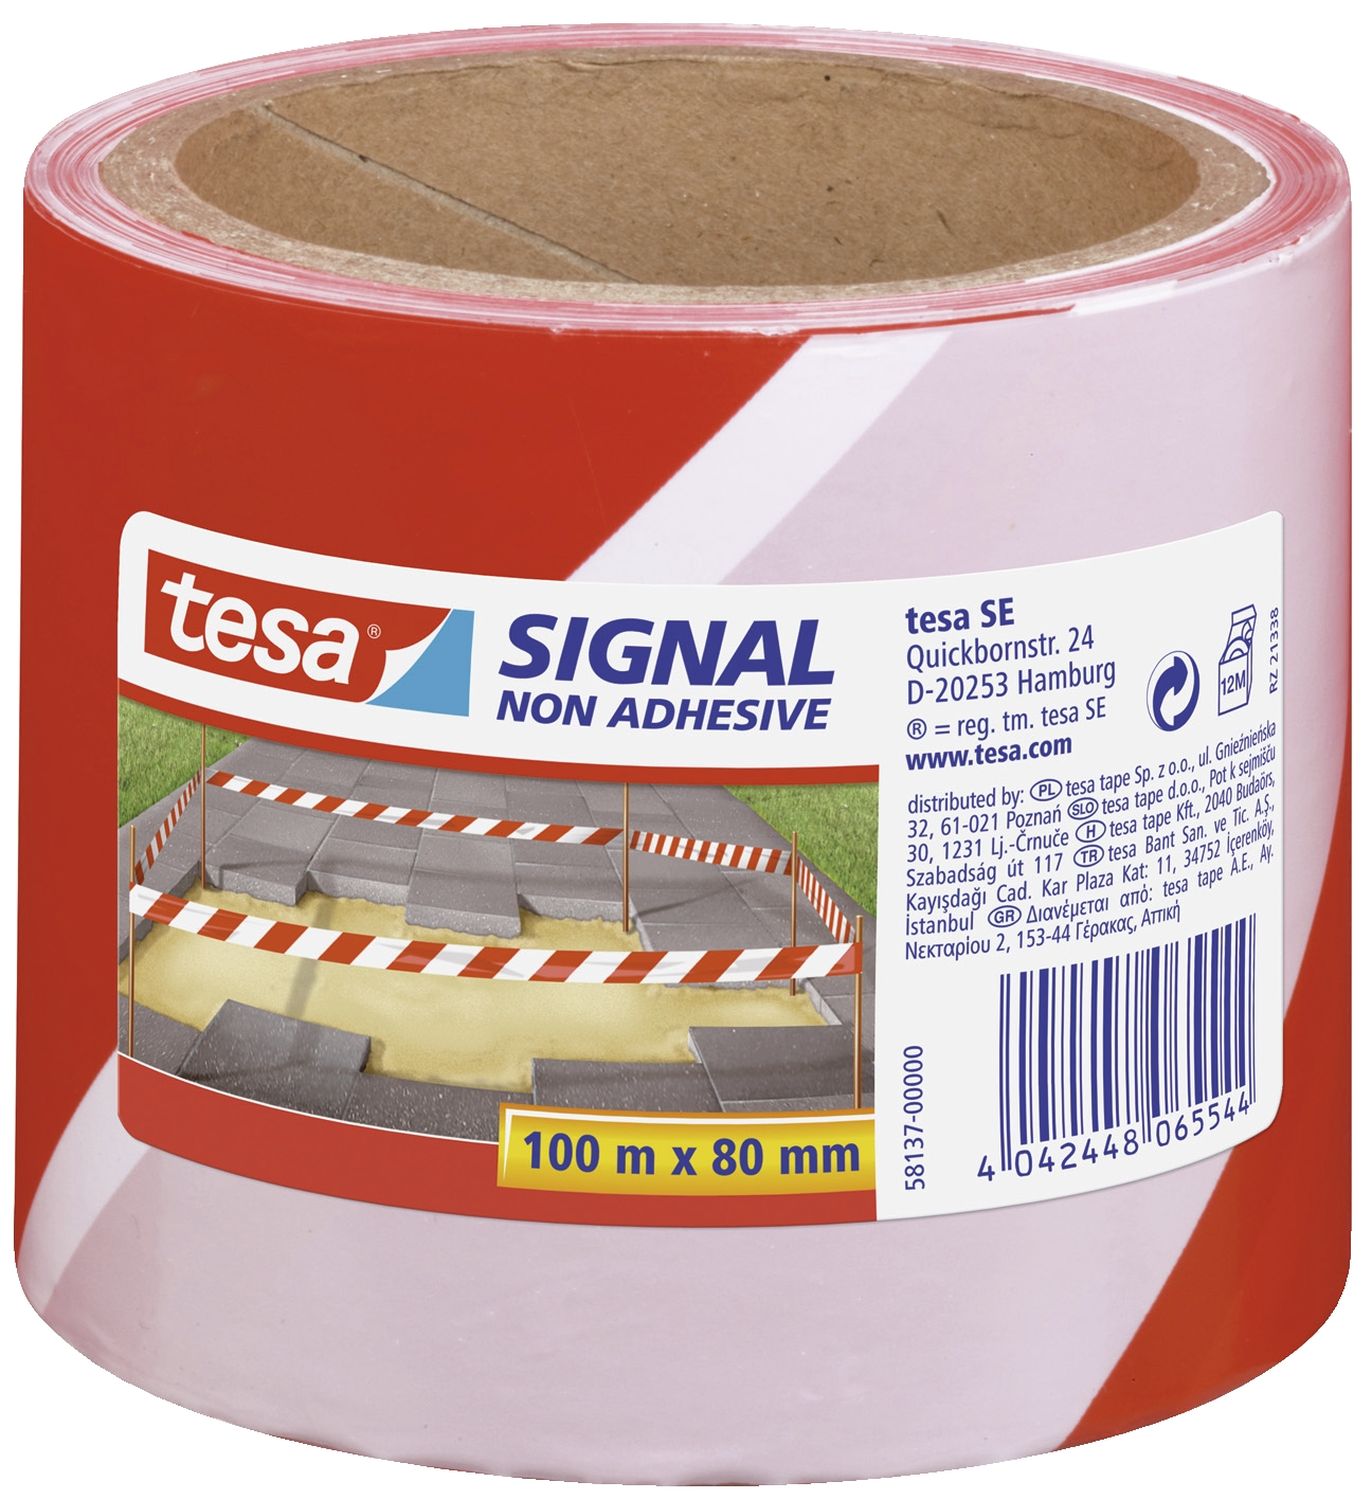 Absperrband tesa® 58137, nicht klebend, rot/weiß, 80 mm x 100 m